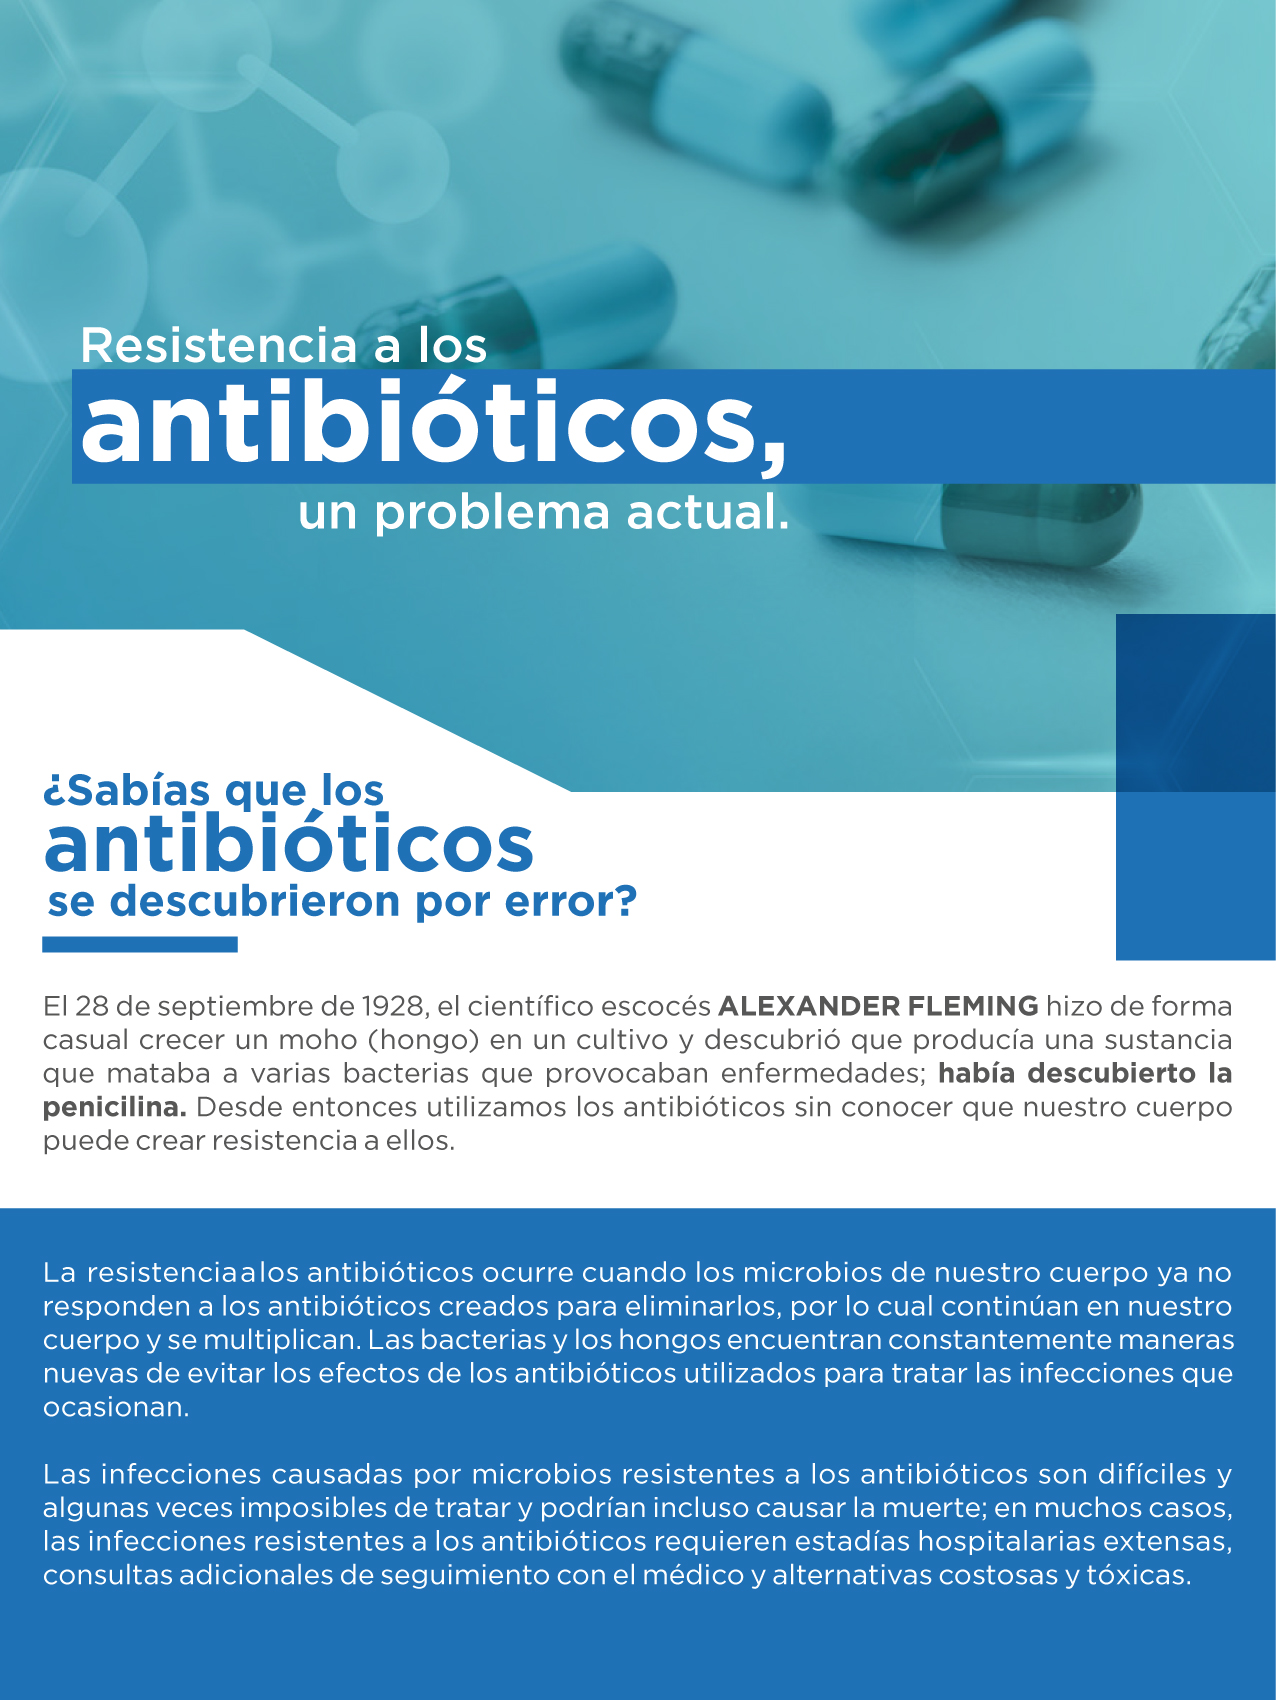 Resistencia a los antibioticos 1